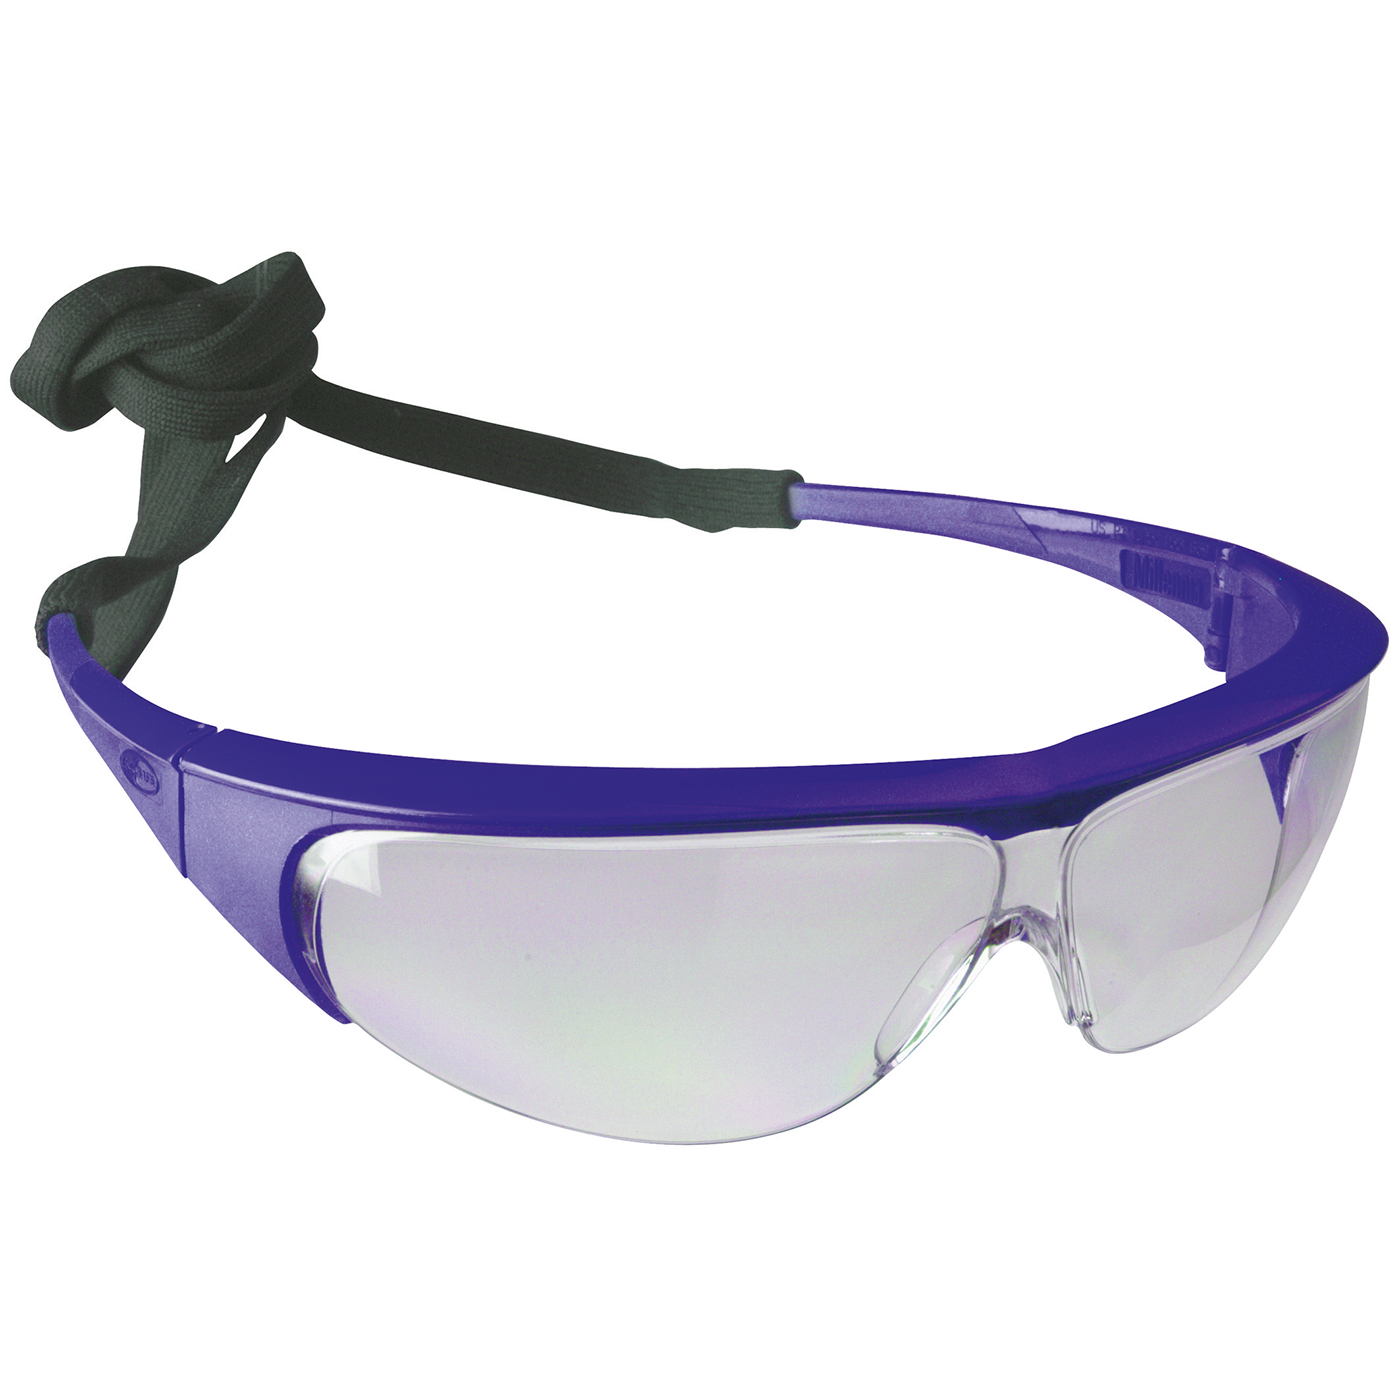 Sperian Millennia Schutzbrille, Scheibe klar, Fassung blau - 1 Stück